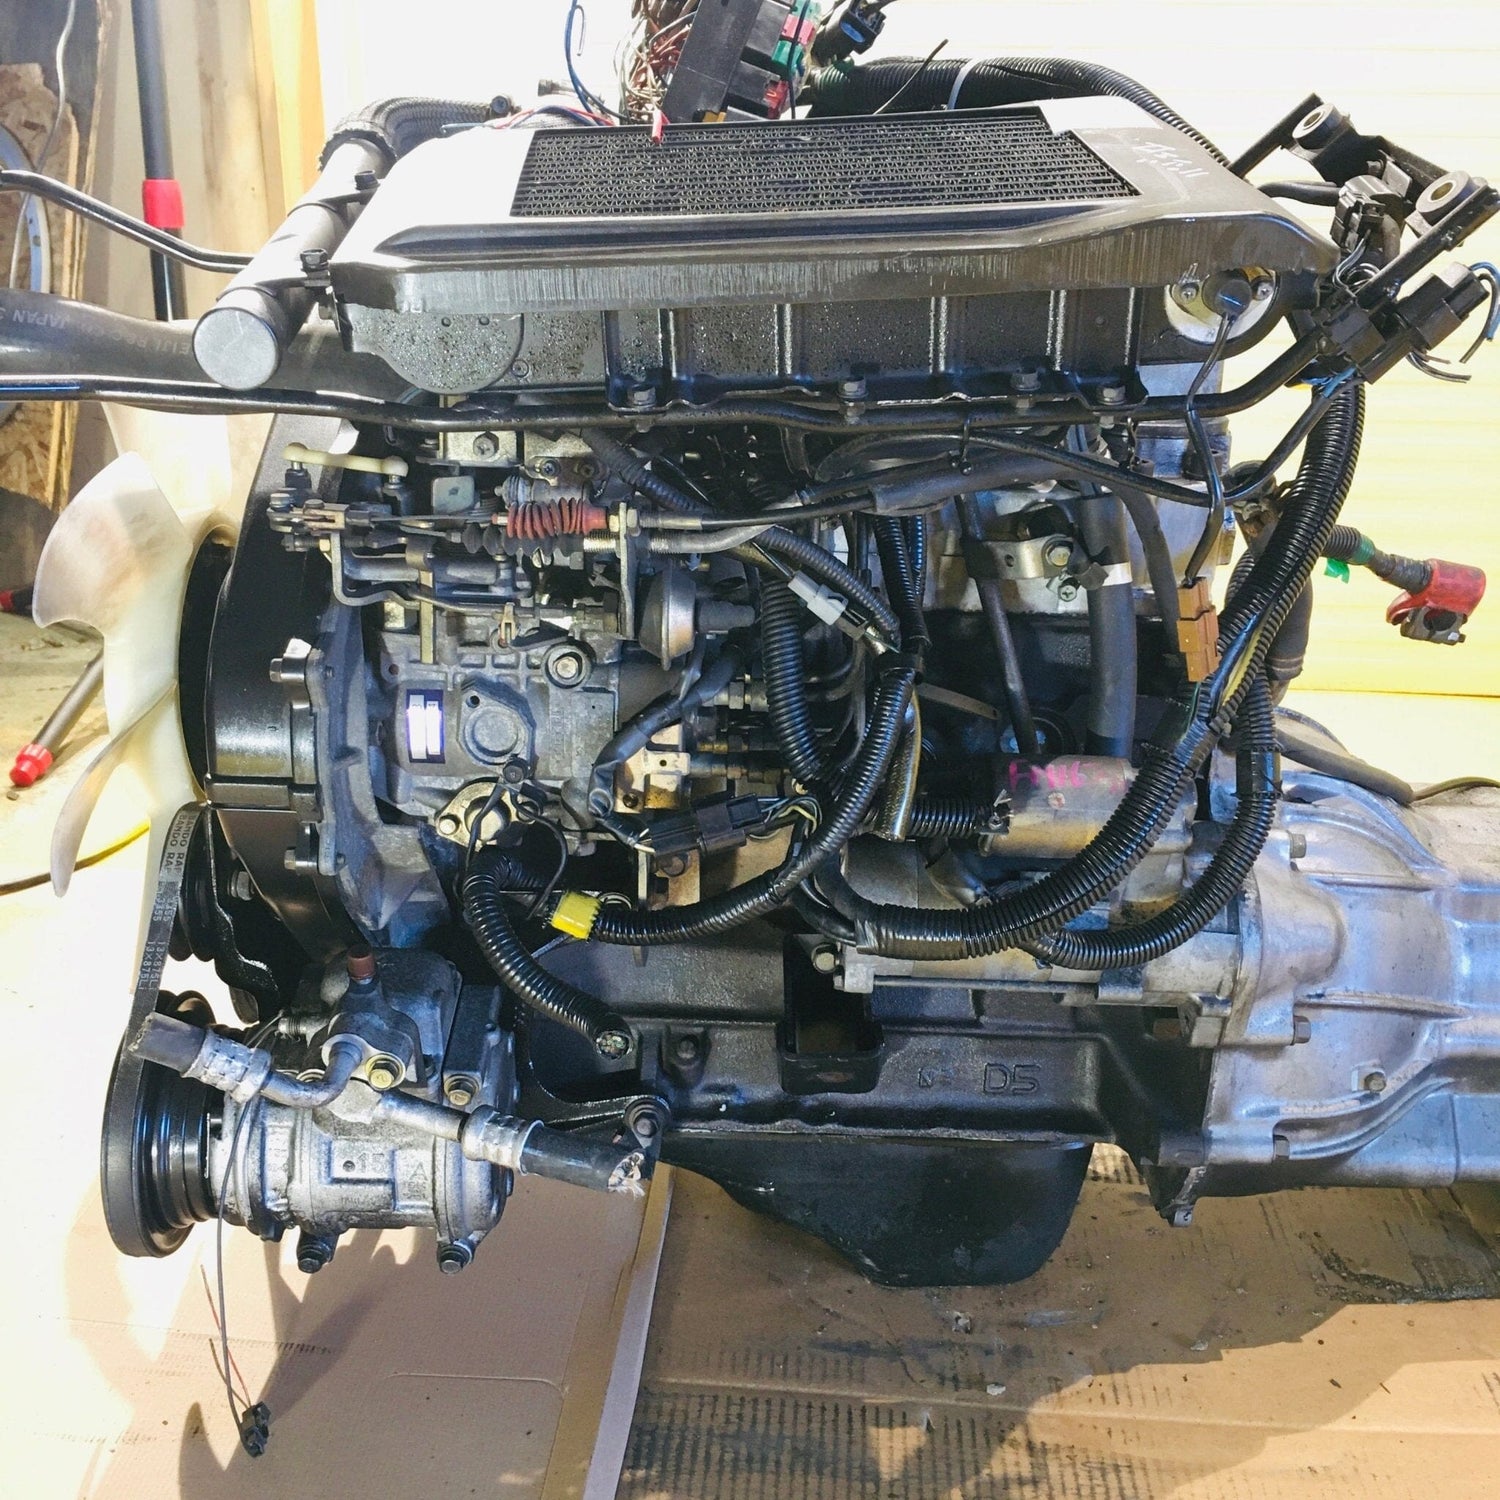 Mitsubishi 2.5L 4wd Turbo Diesel JDM Automatic Swap 